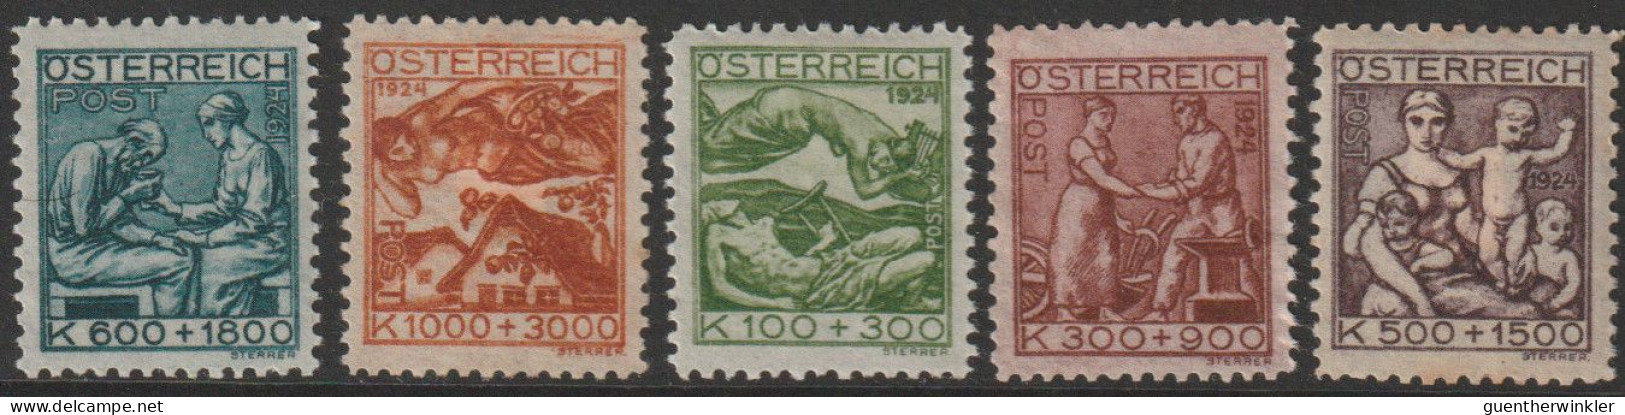 Österreich 1924 ANK/Mi: 442-446* MLH [442-446x] - Ungebraucht